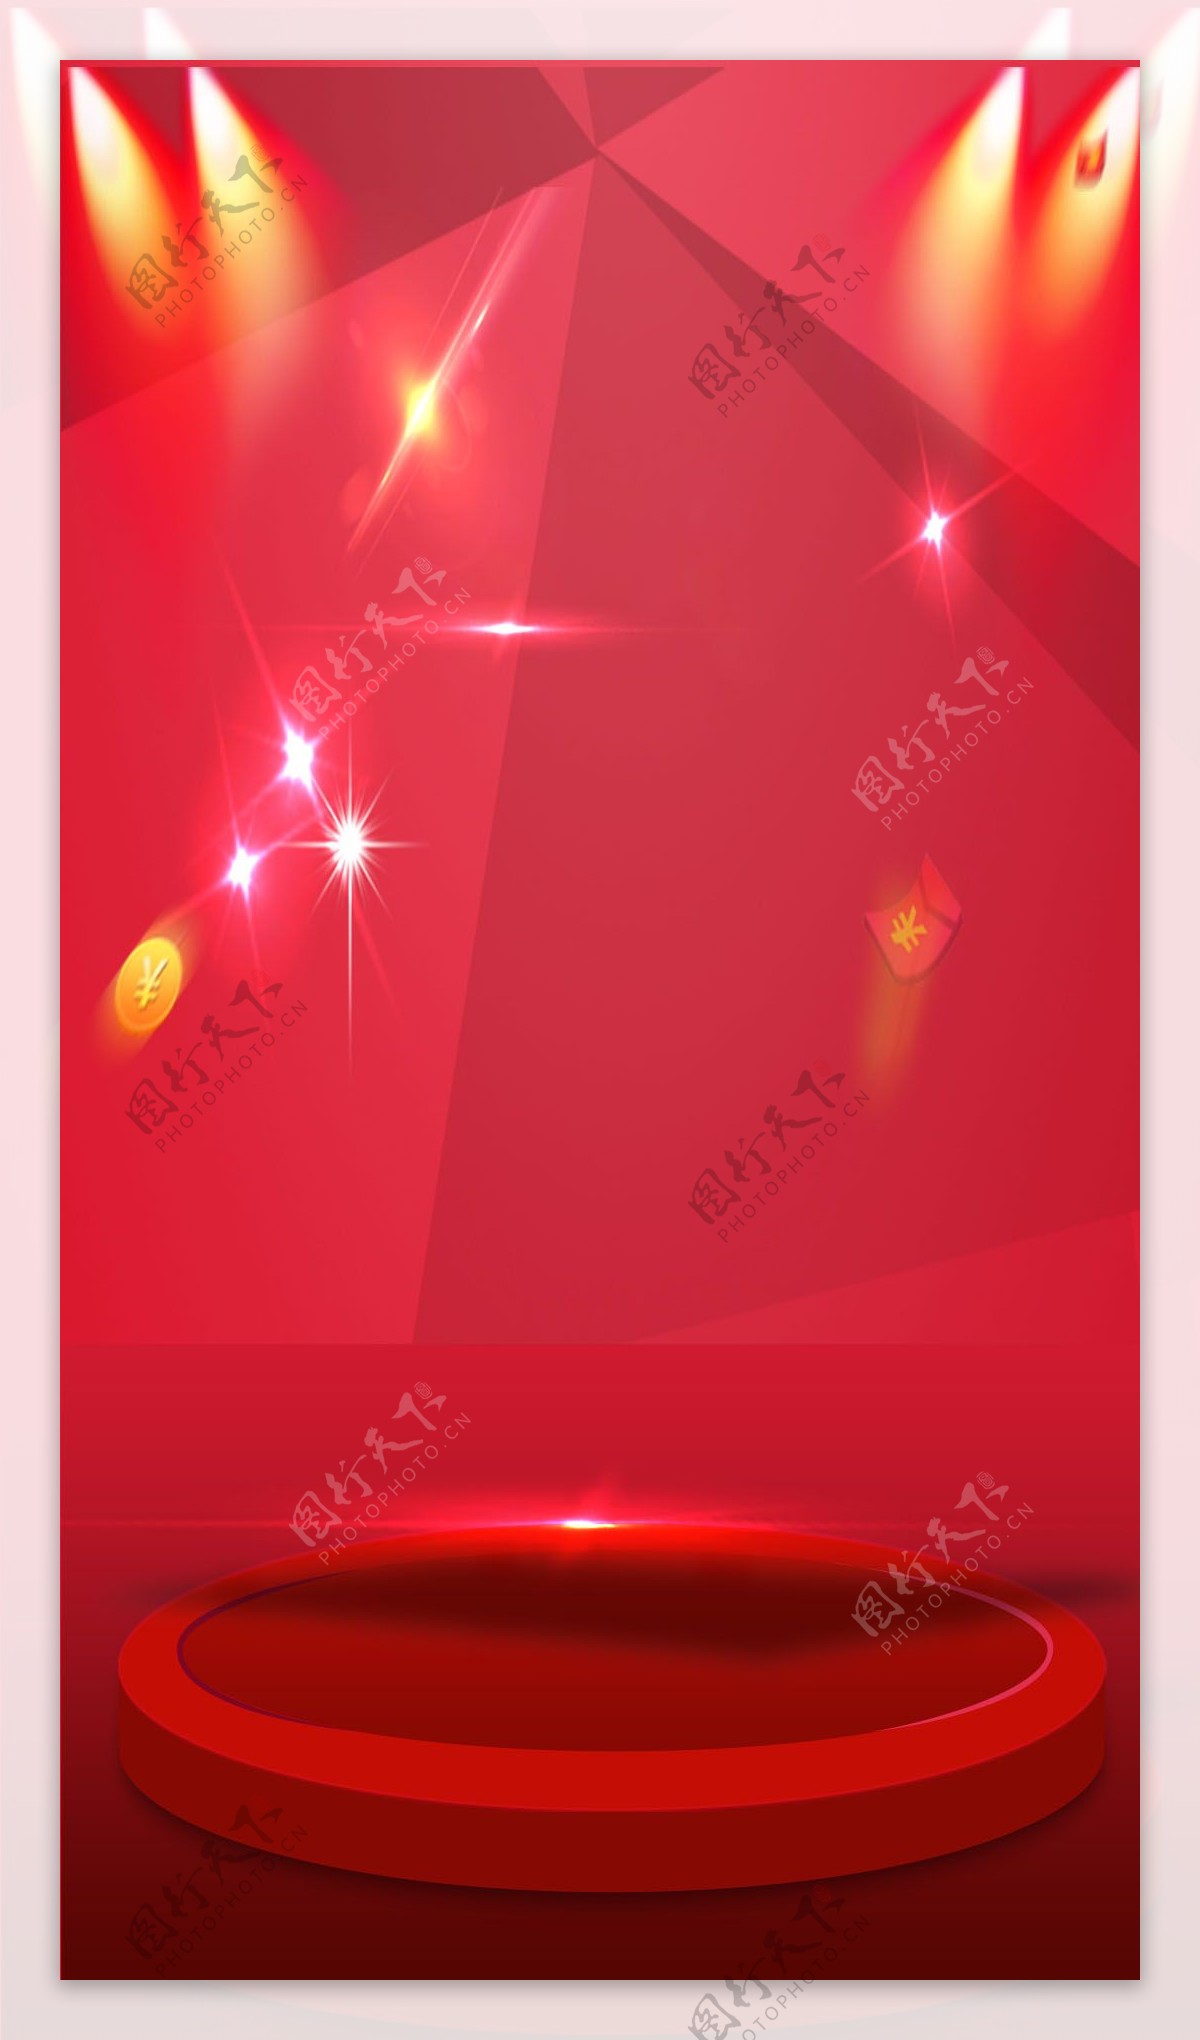 唯美红色舞台灯光H5背景素材